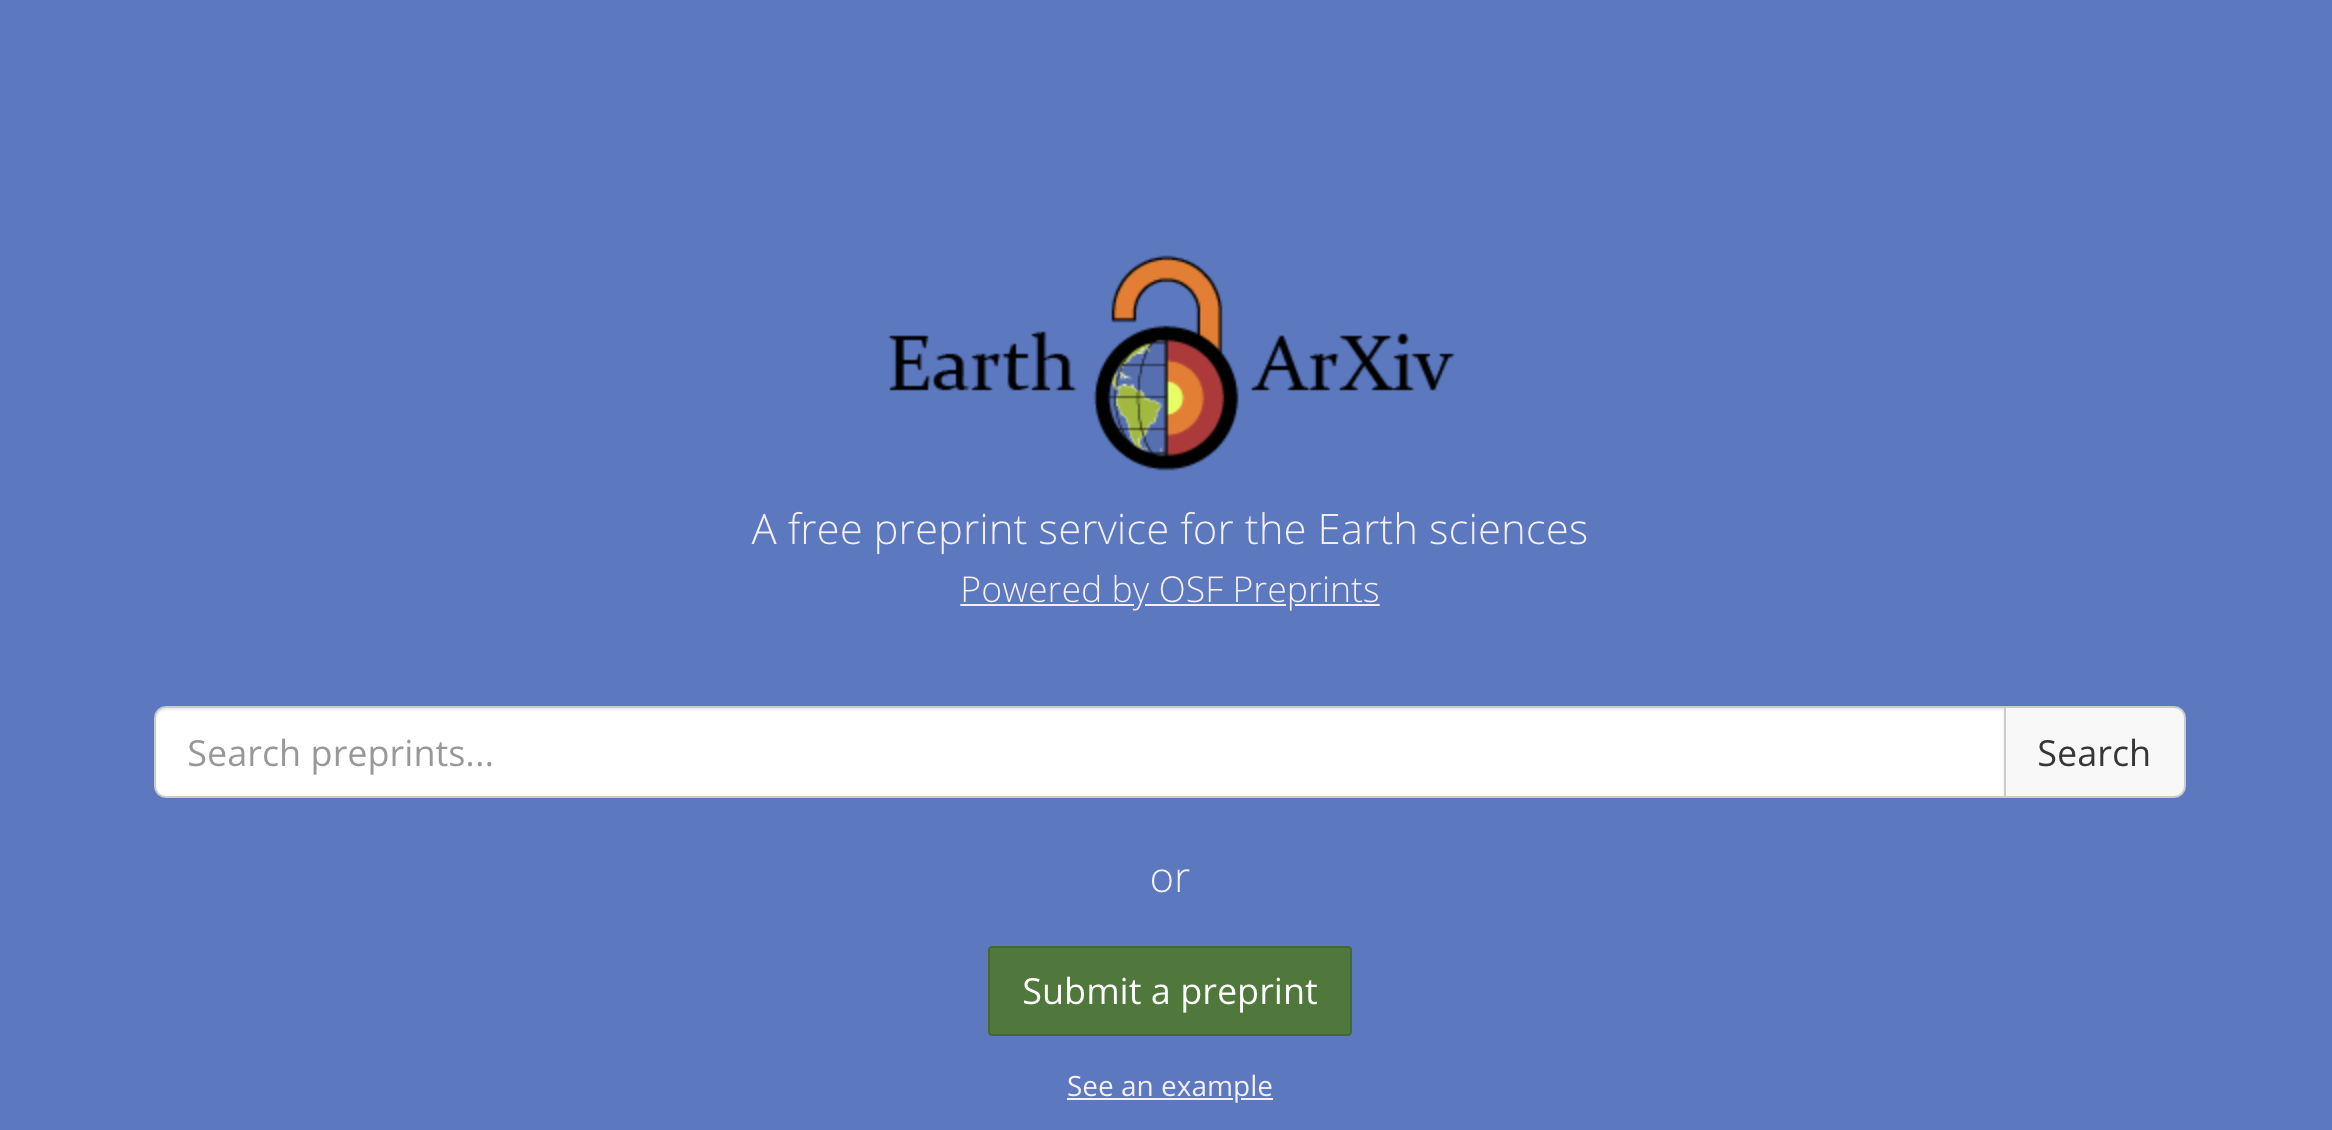 EarthArXiv journal website https://eartharxiv.org